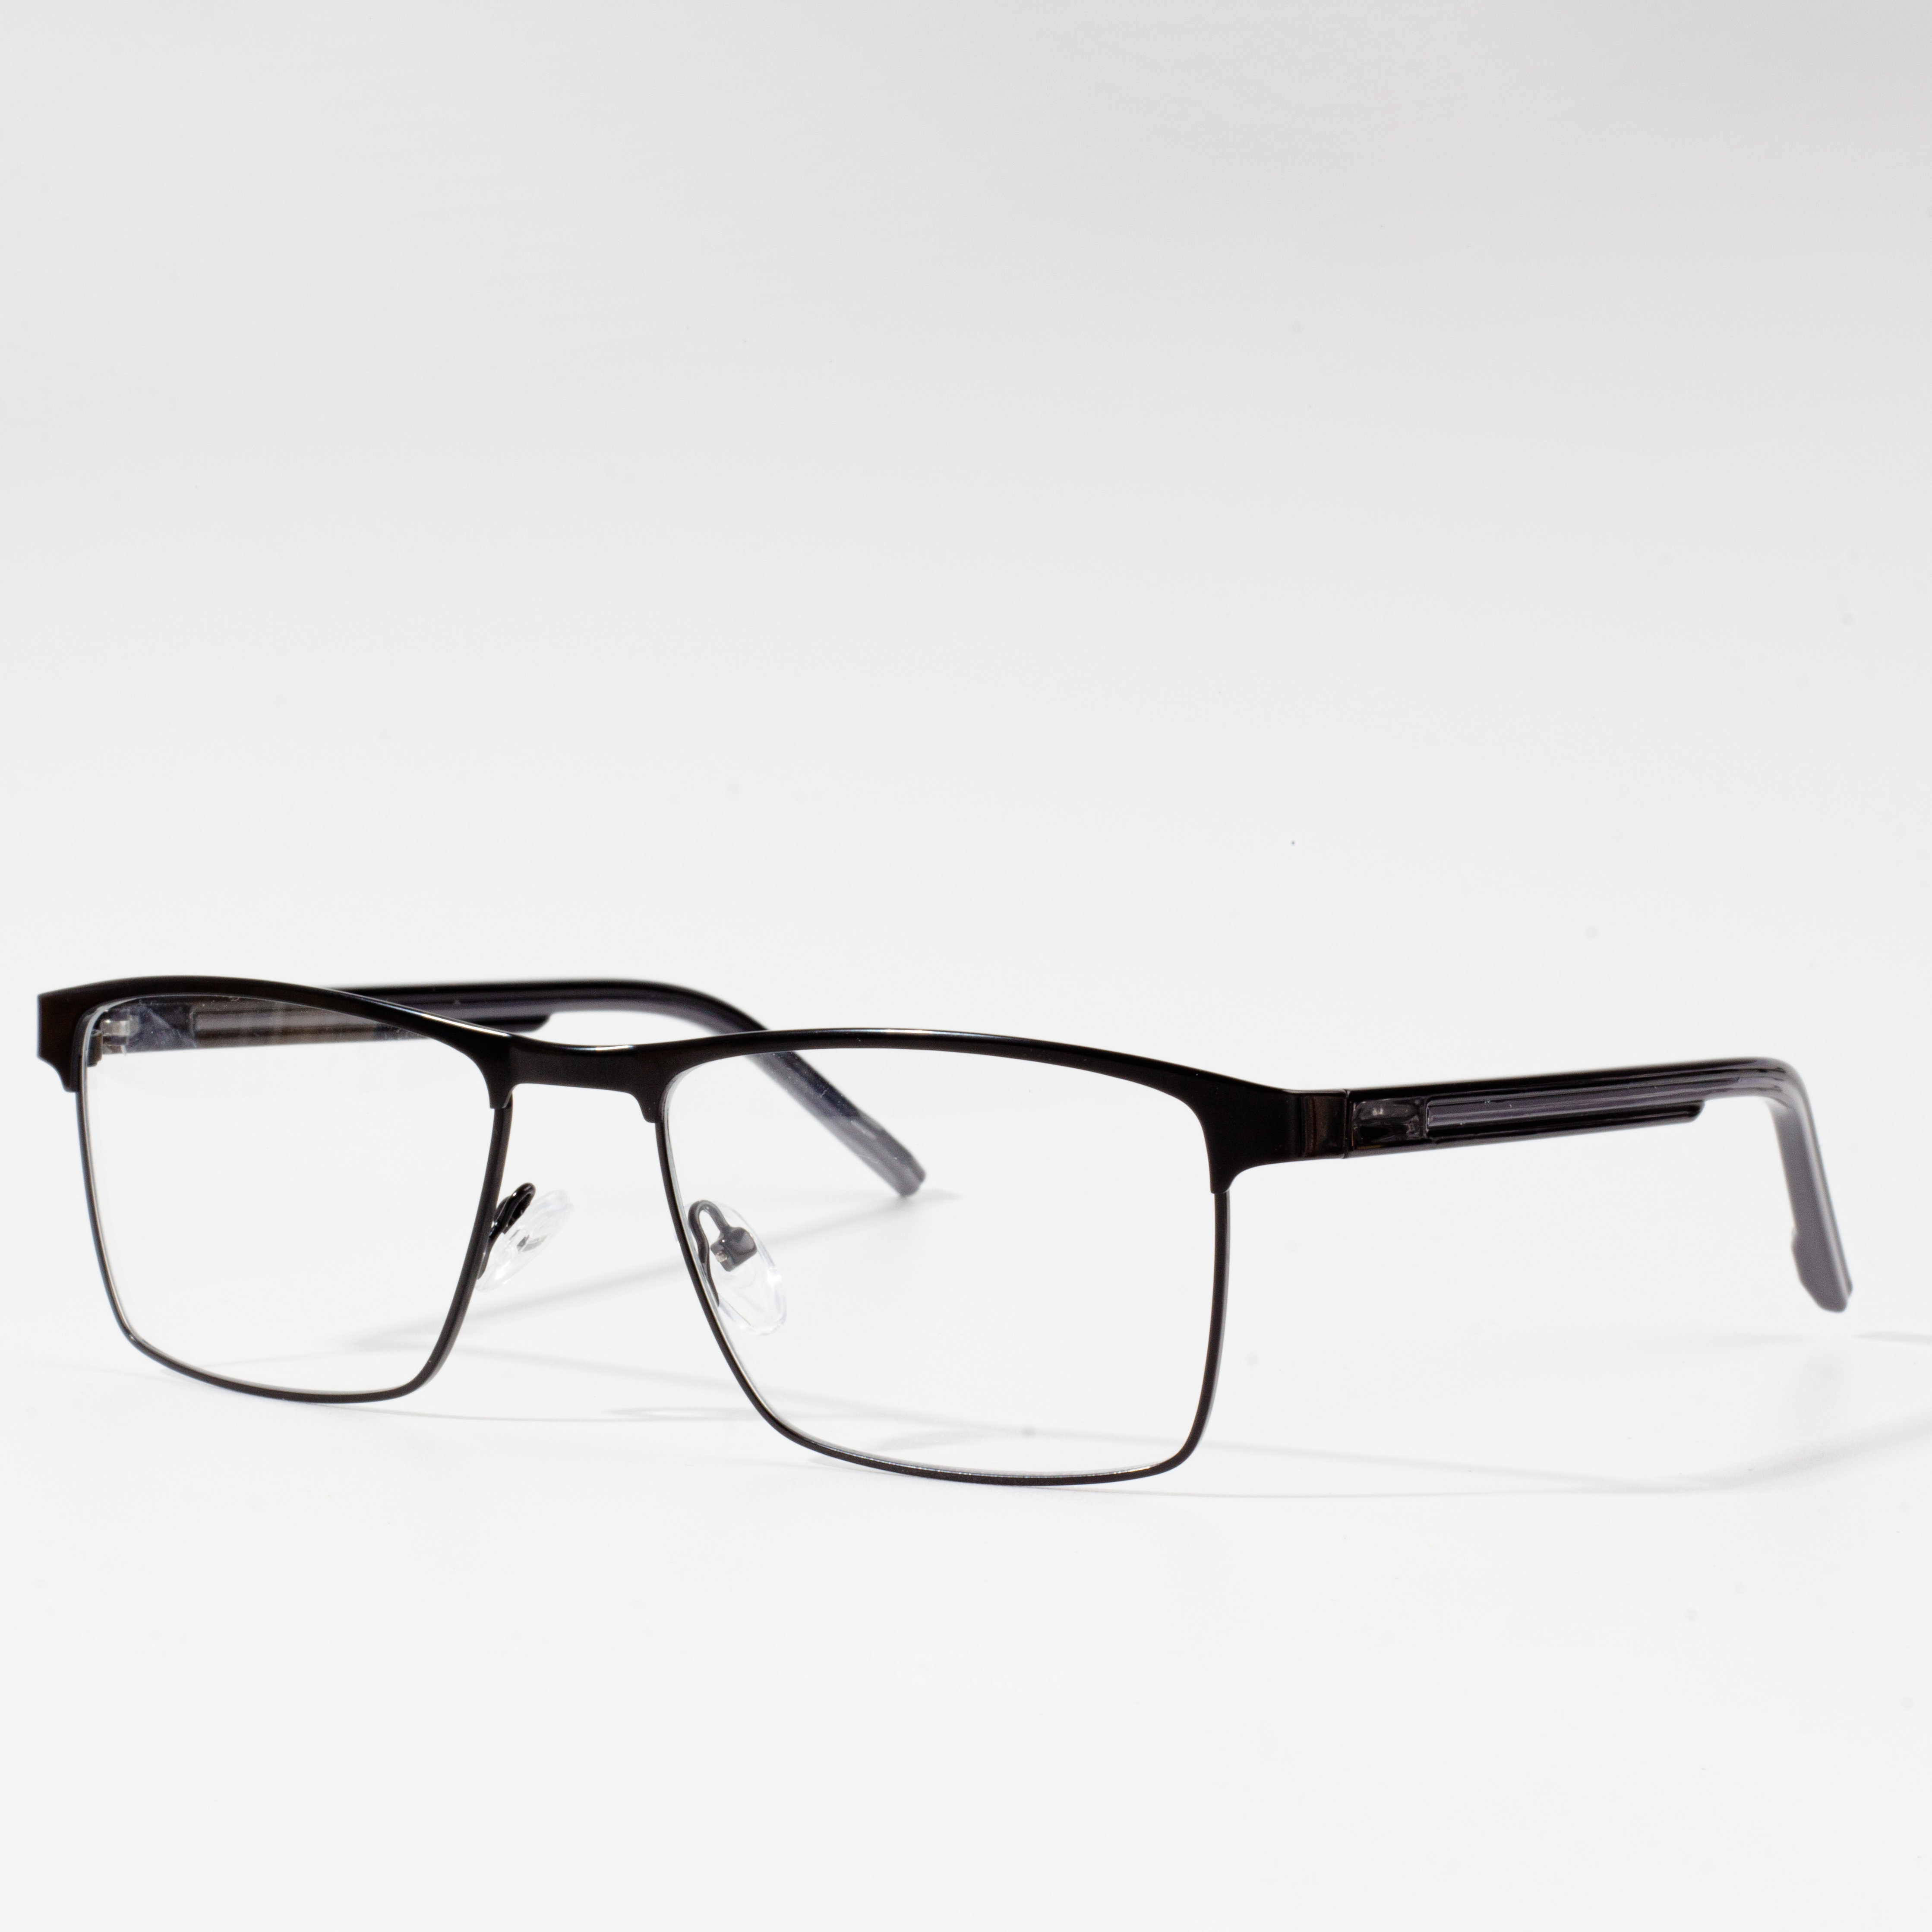 Optyske bril